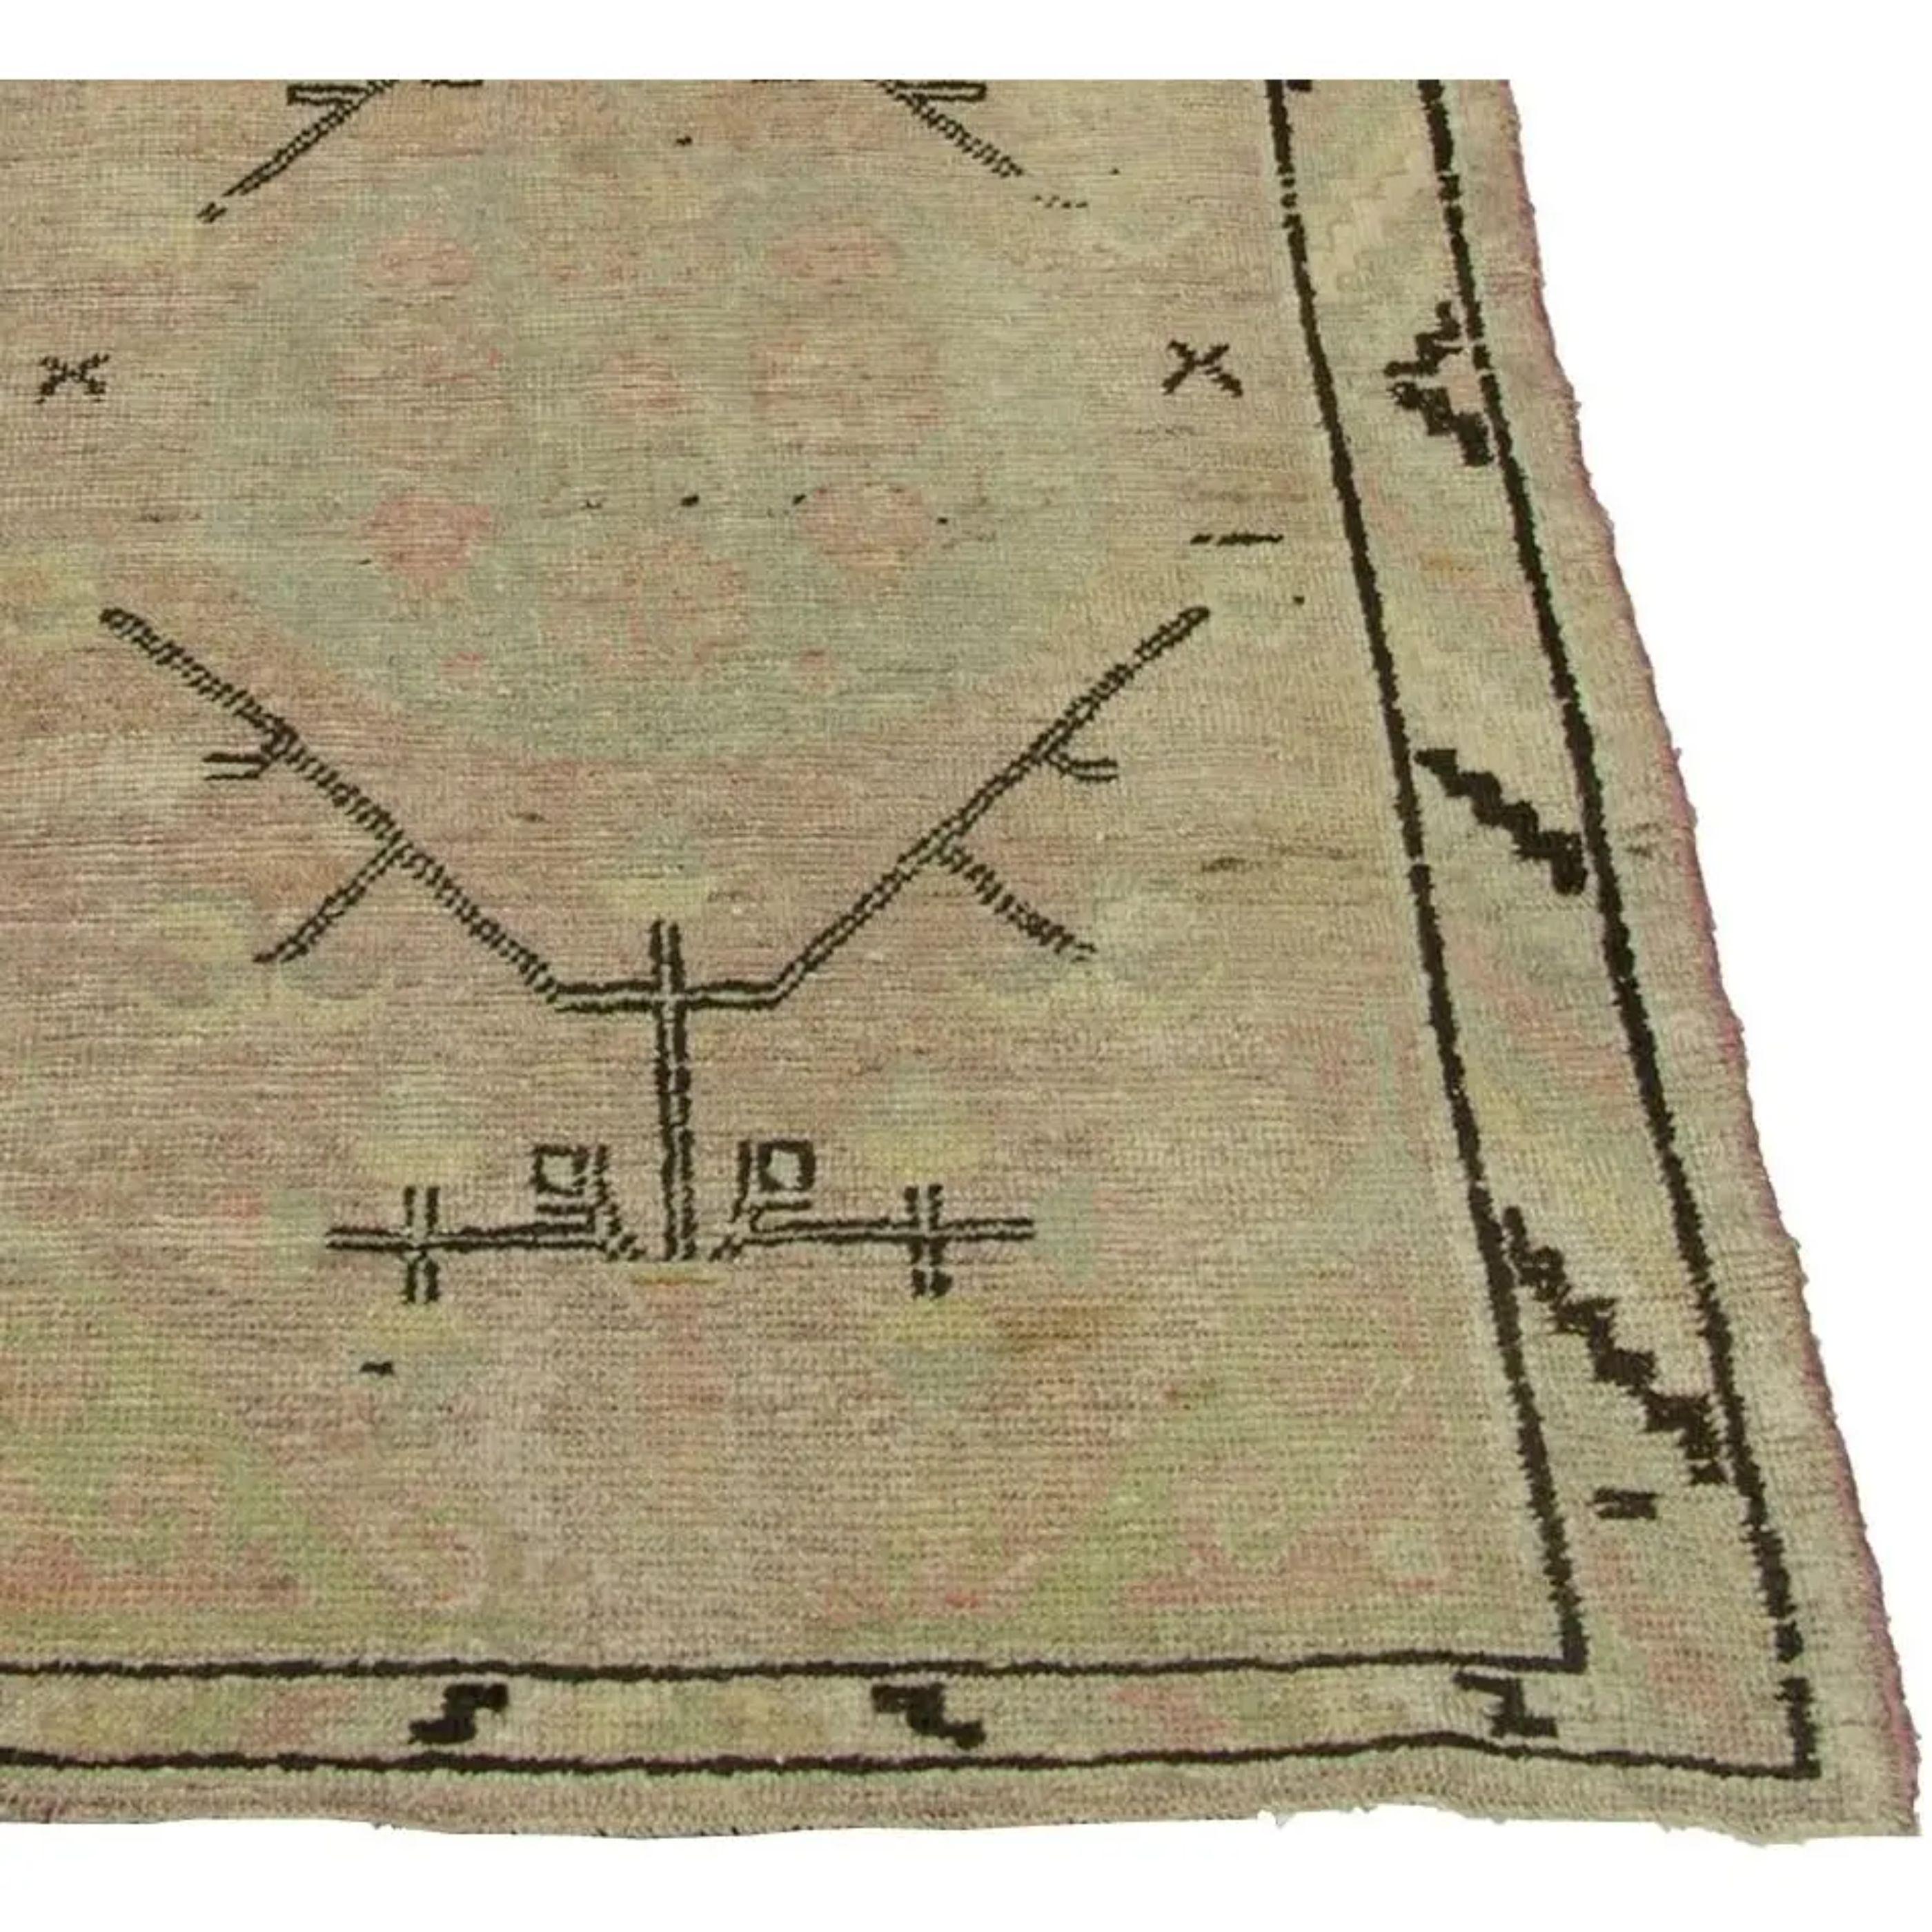 Up&Up est un tapis ancien de Samakhand. Il s'agit d'un tapis à design/One tribal ouzbek avec un rose plus clair sur l'ensemble du tapis.  

